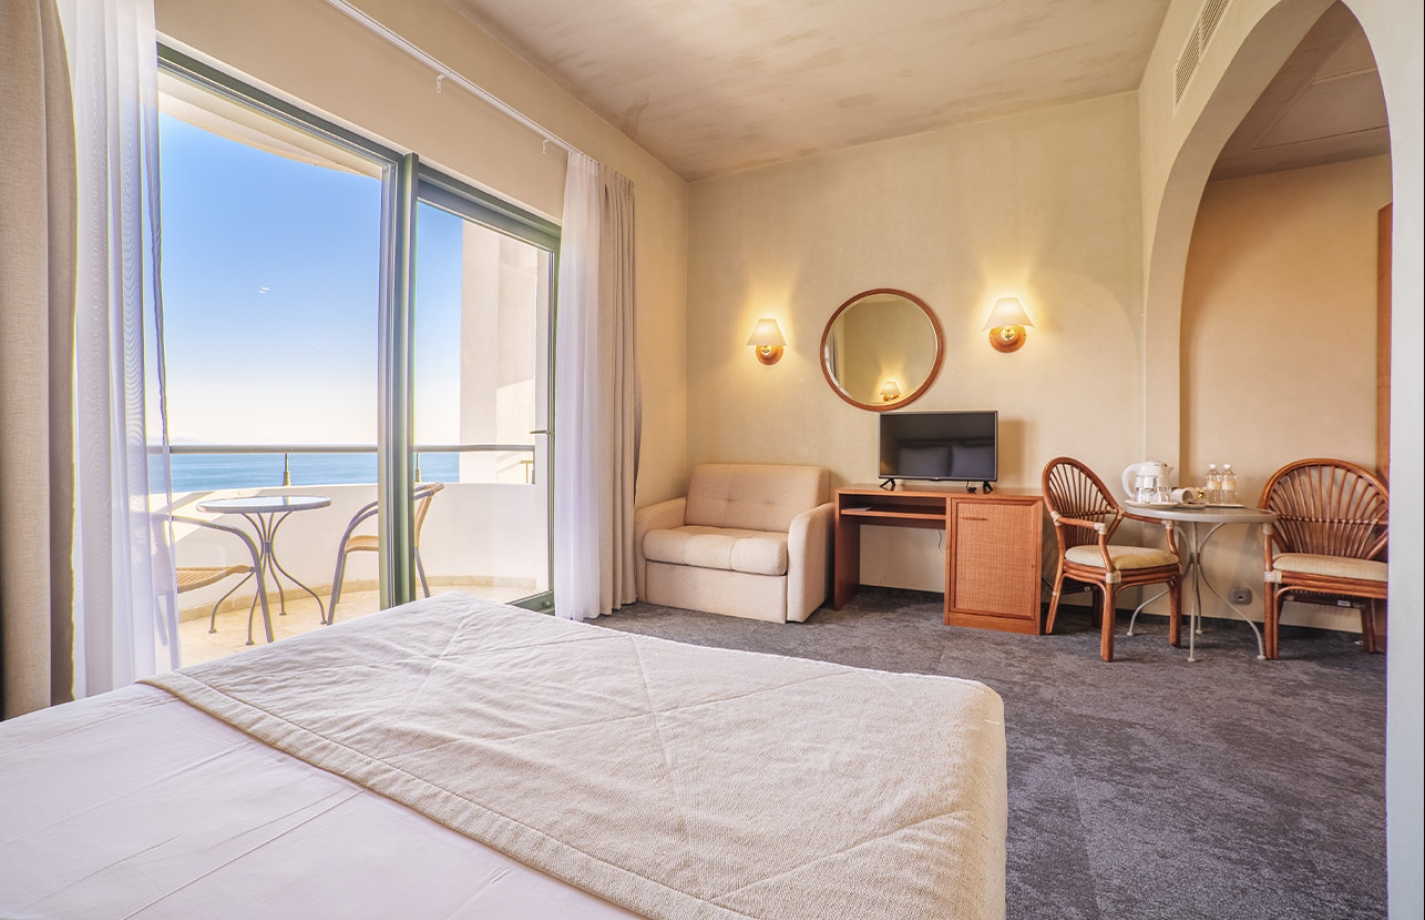 Стандарт Море в отел Море спа резорт в Алуште – это просторный и светлый однокомнатный номер с обычным или французским балконом и потрясающим видом на море